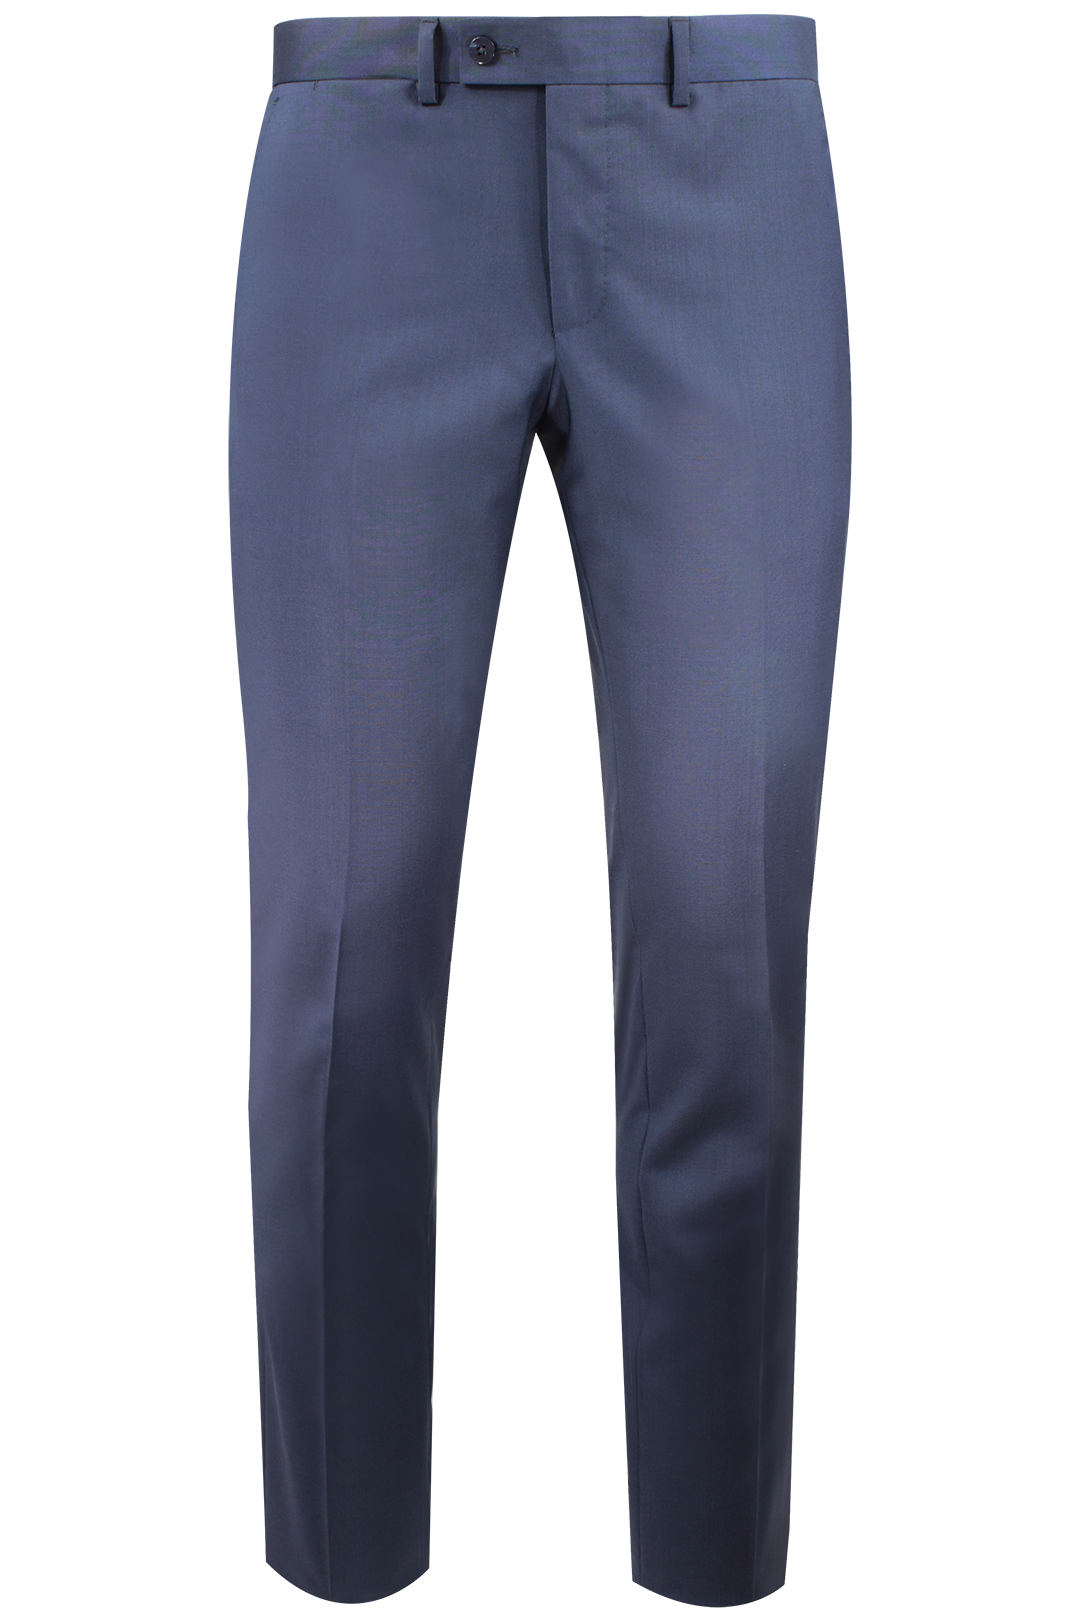 Pantalone in tela di lana vergine bluette